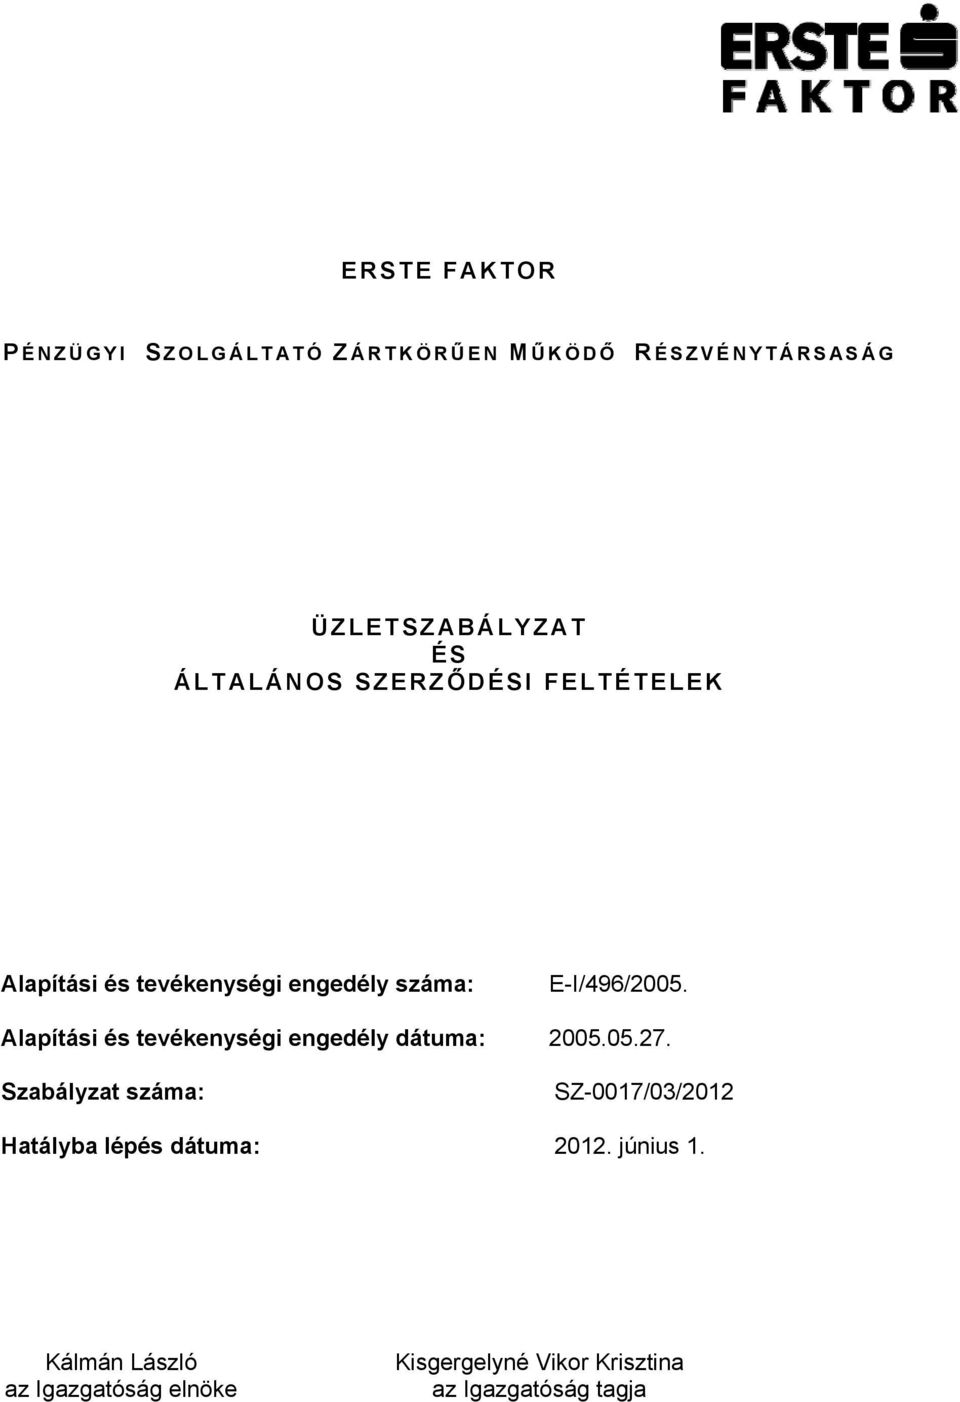 Alapítási és tevékenységi engedély dátuma: 2005.05.27.